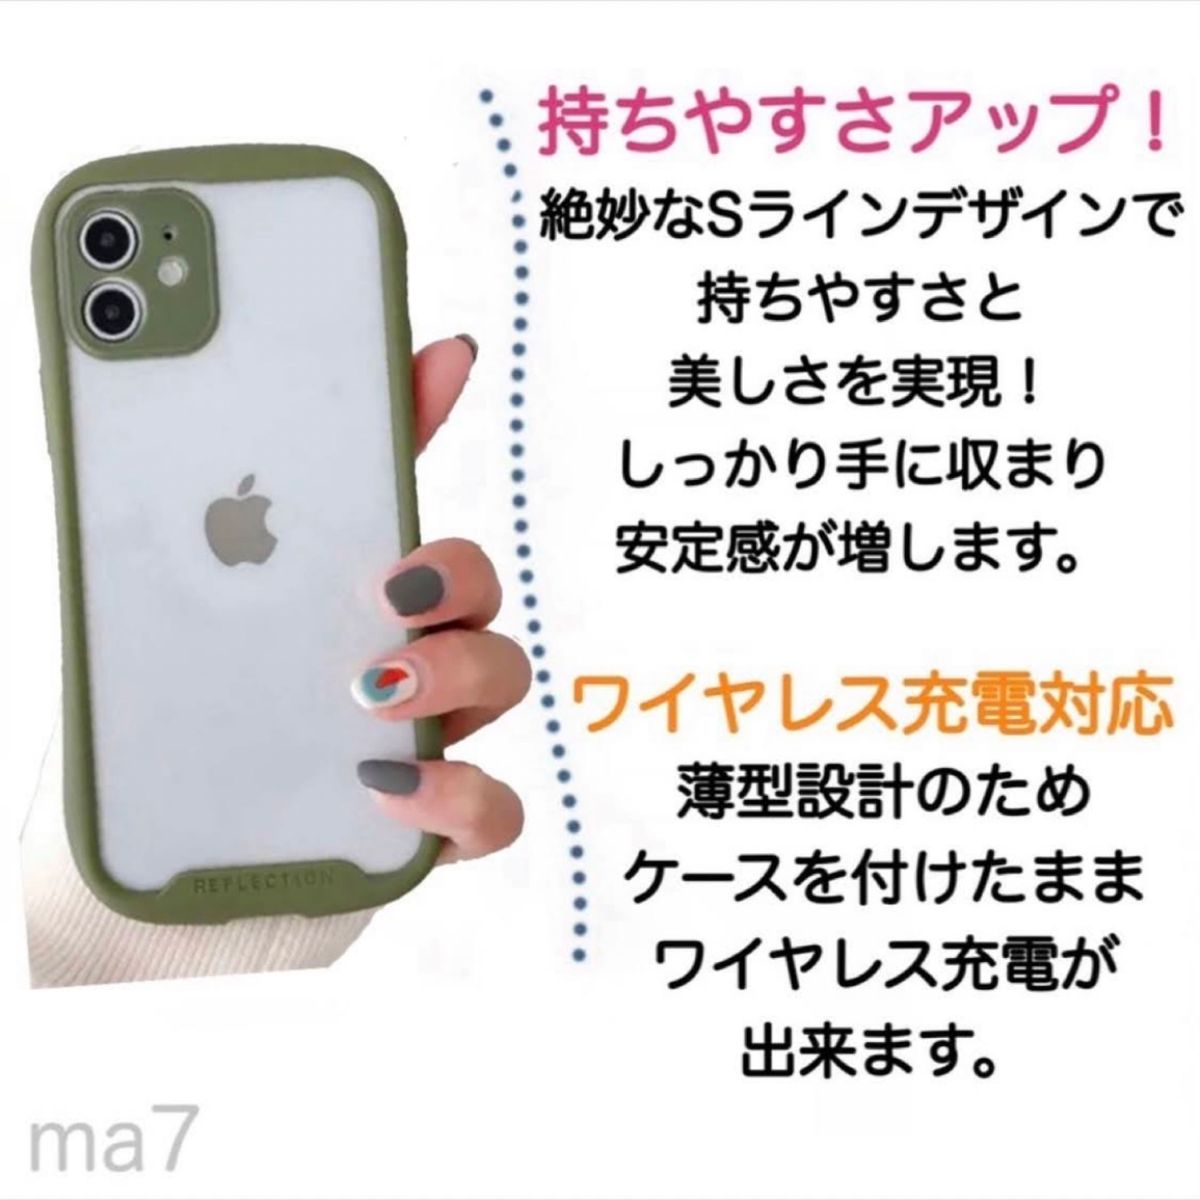 iphoneケース iphone11 クリアケース 透明 アイフォン 韓国 カーキ グリーン スマホケース iPhone 11